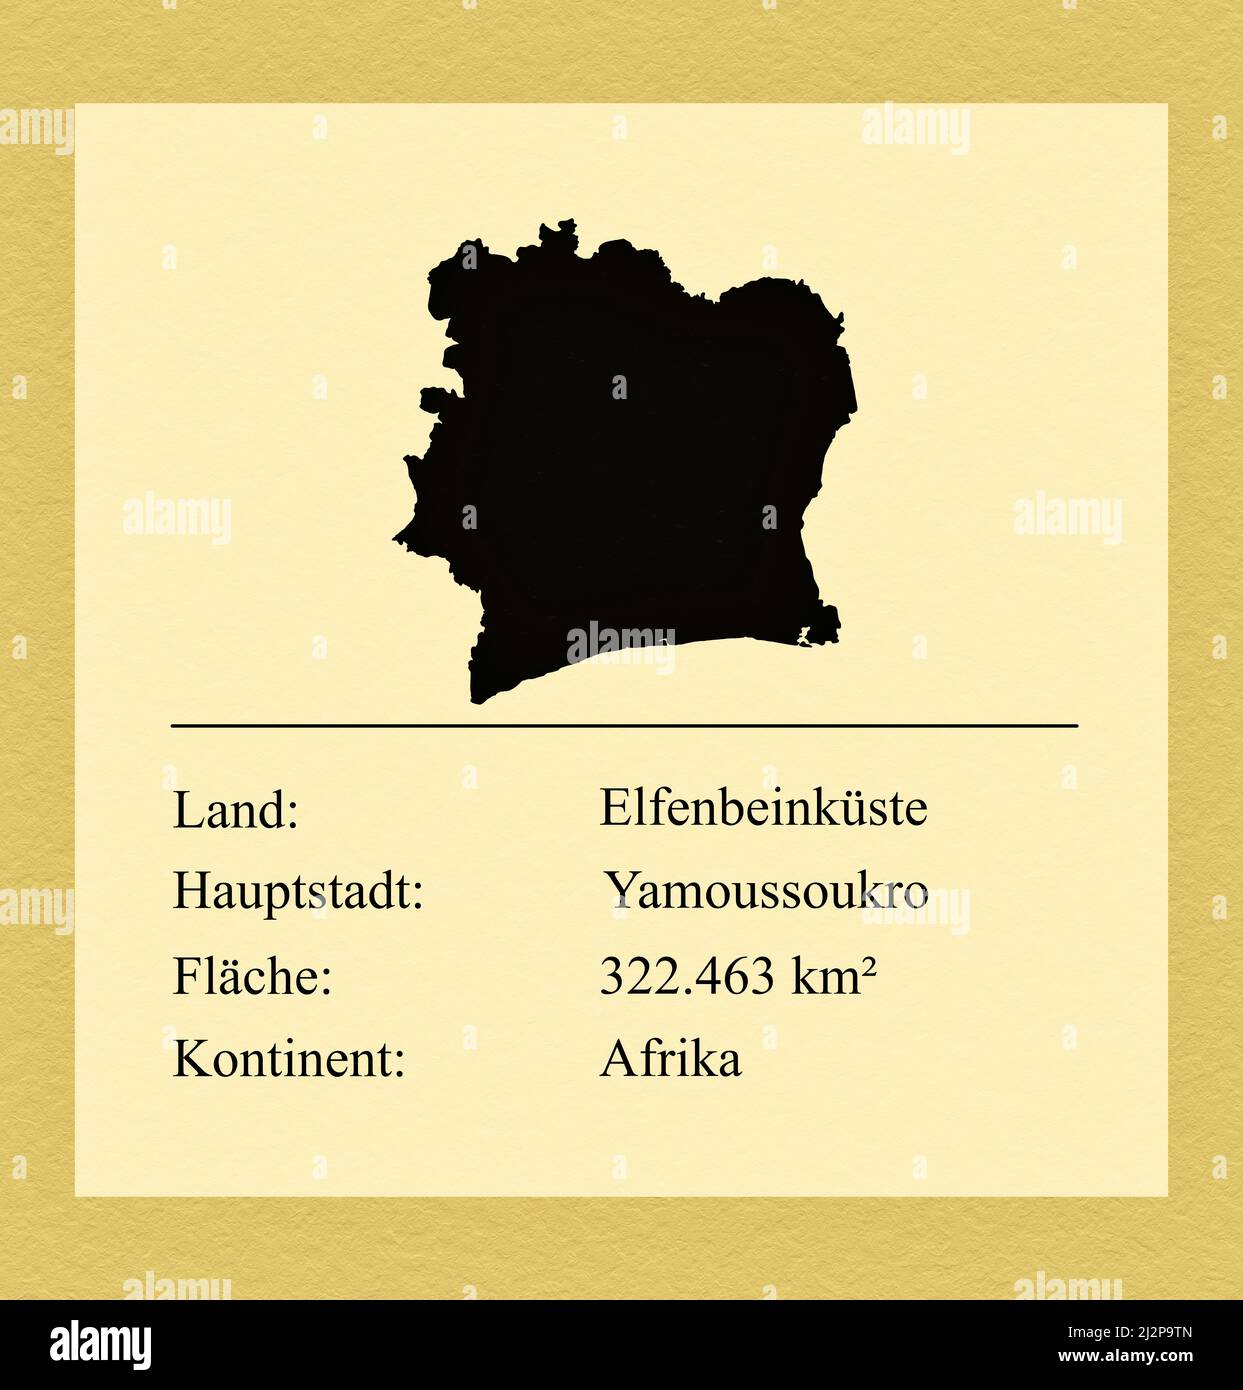 Umrisse des Landes Elfenbeinküste, darunter ein kleiner Steckbrief mit Ländernamen, Hauptstadt, Fläche und Kontinent Foto de stock